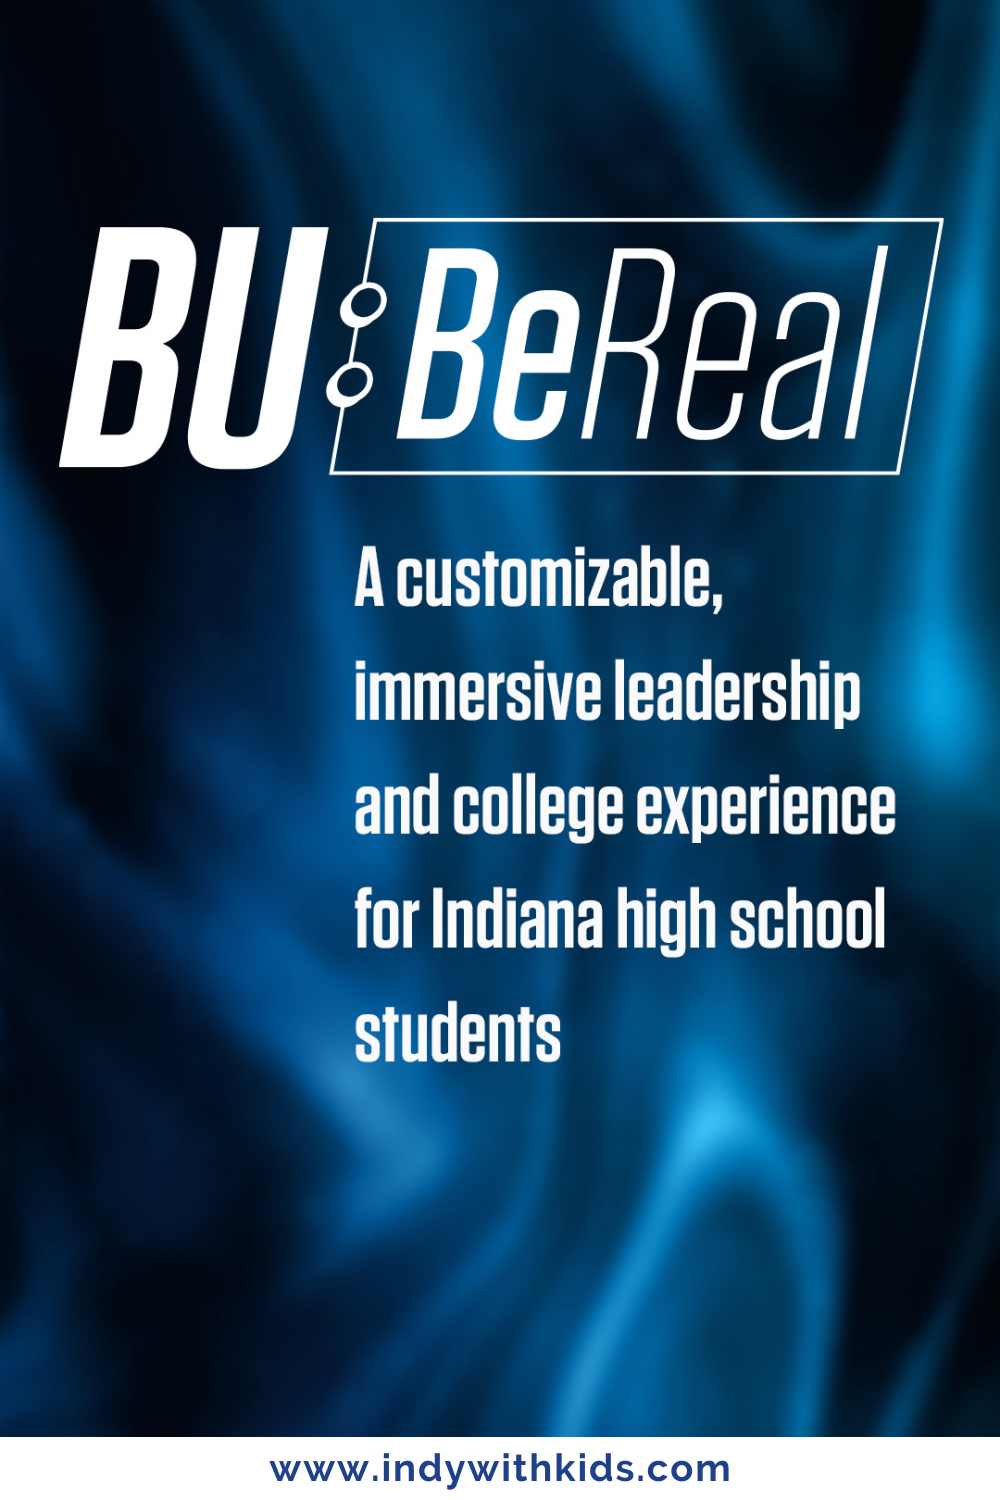 BU BeReal Immersive Leadership Camp pinterest poster